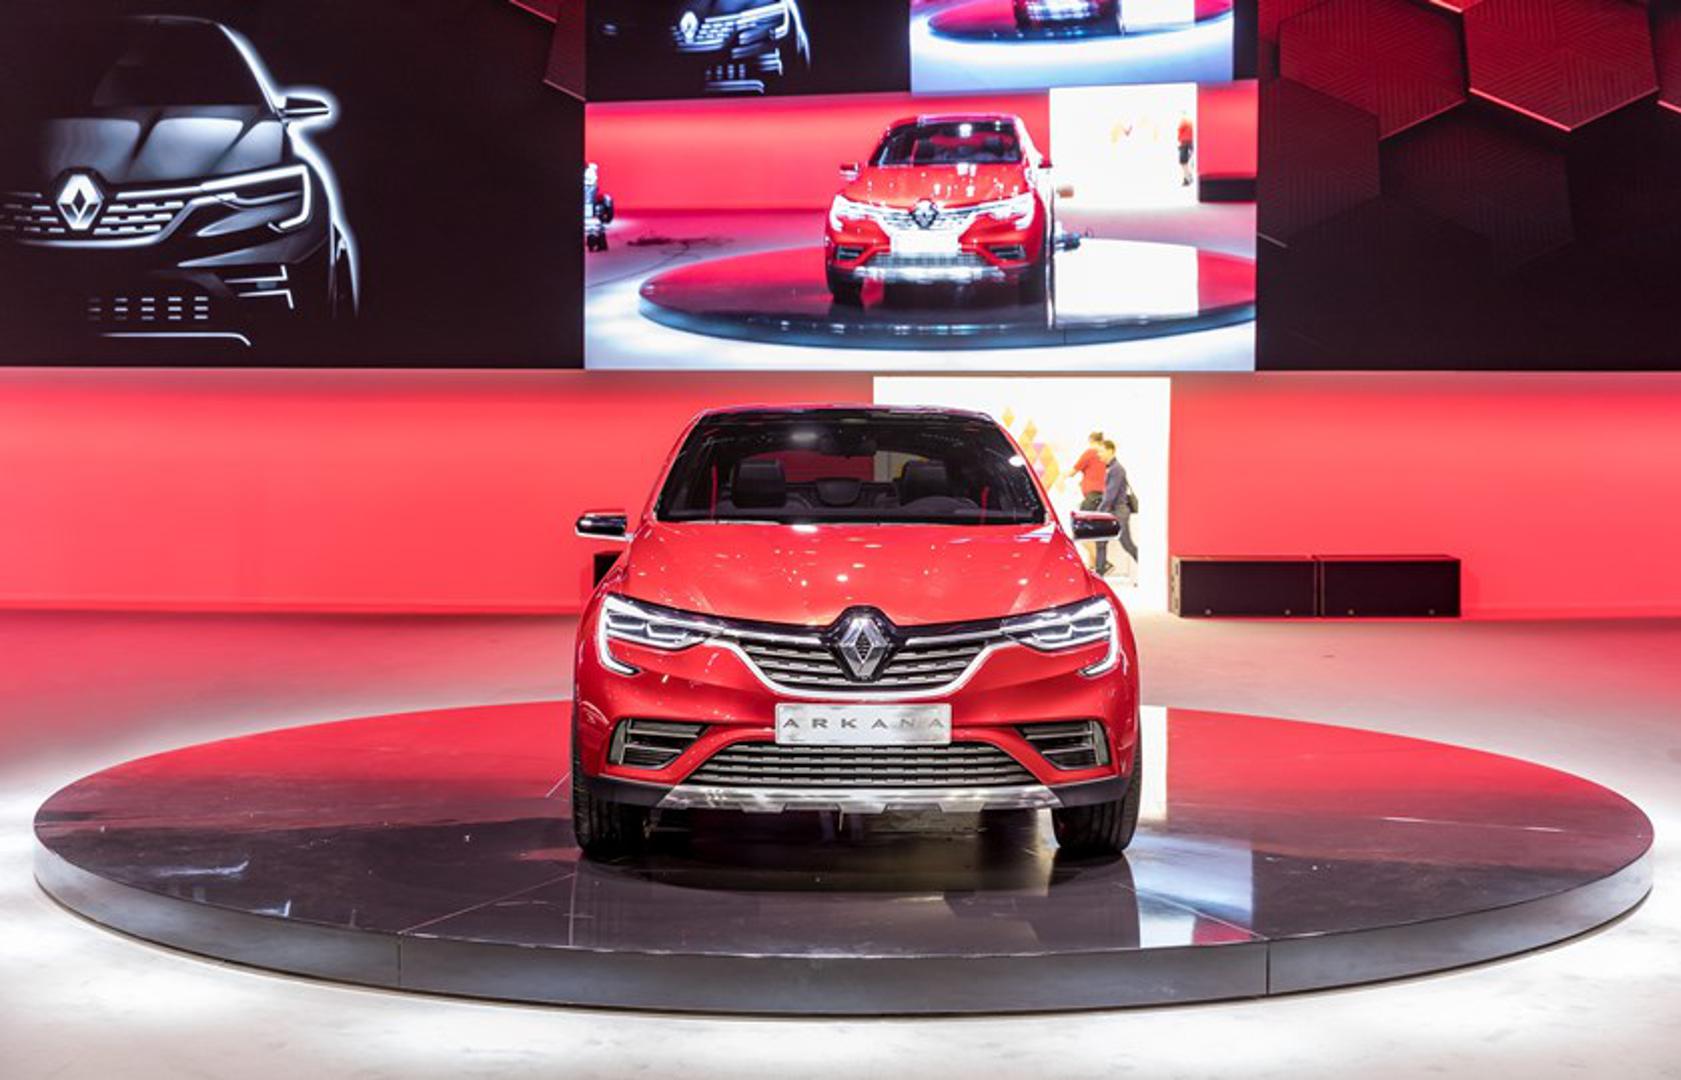 Grupa Renault lani je uzela trećinu ruskog tržišta, a koncept za ovaj model stigao je iz Rusije te je izveden uz veliku uključenost ruskog tima Renaulta, rekao je predsjednik tvrtke za euroazijsku regiju Nicolas Maure.

